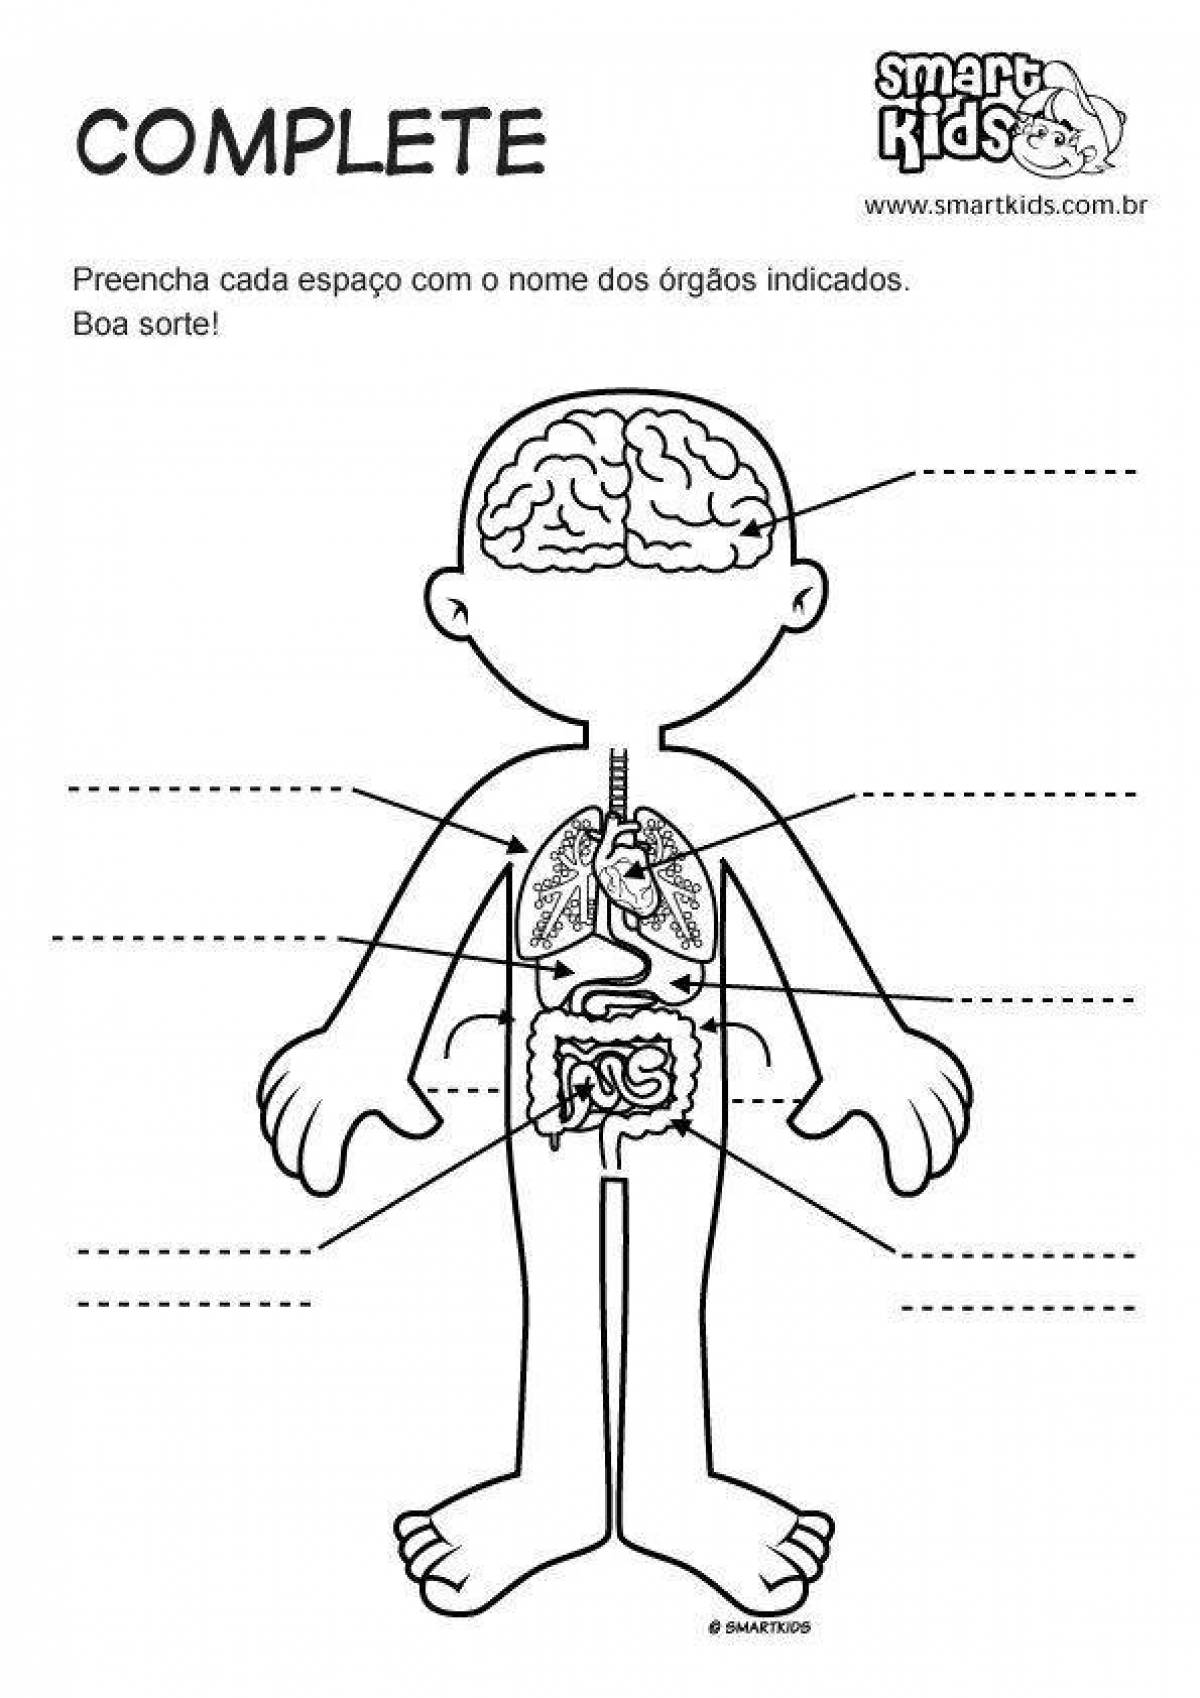 Human internal organs for children #19